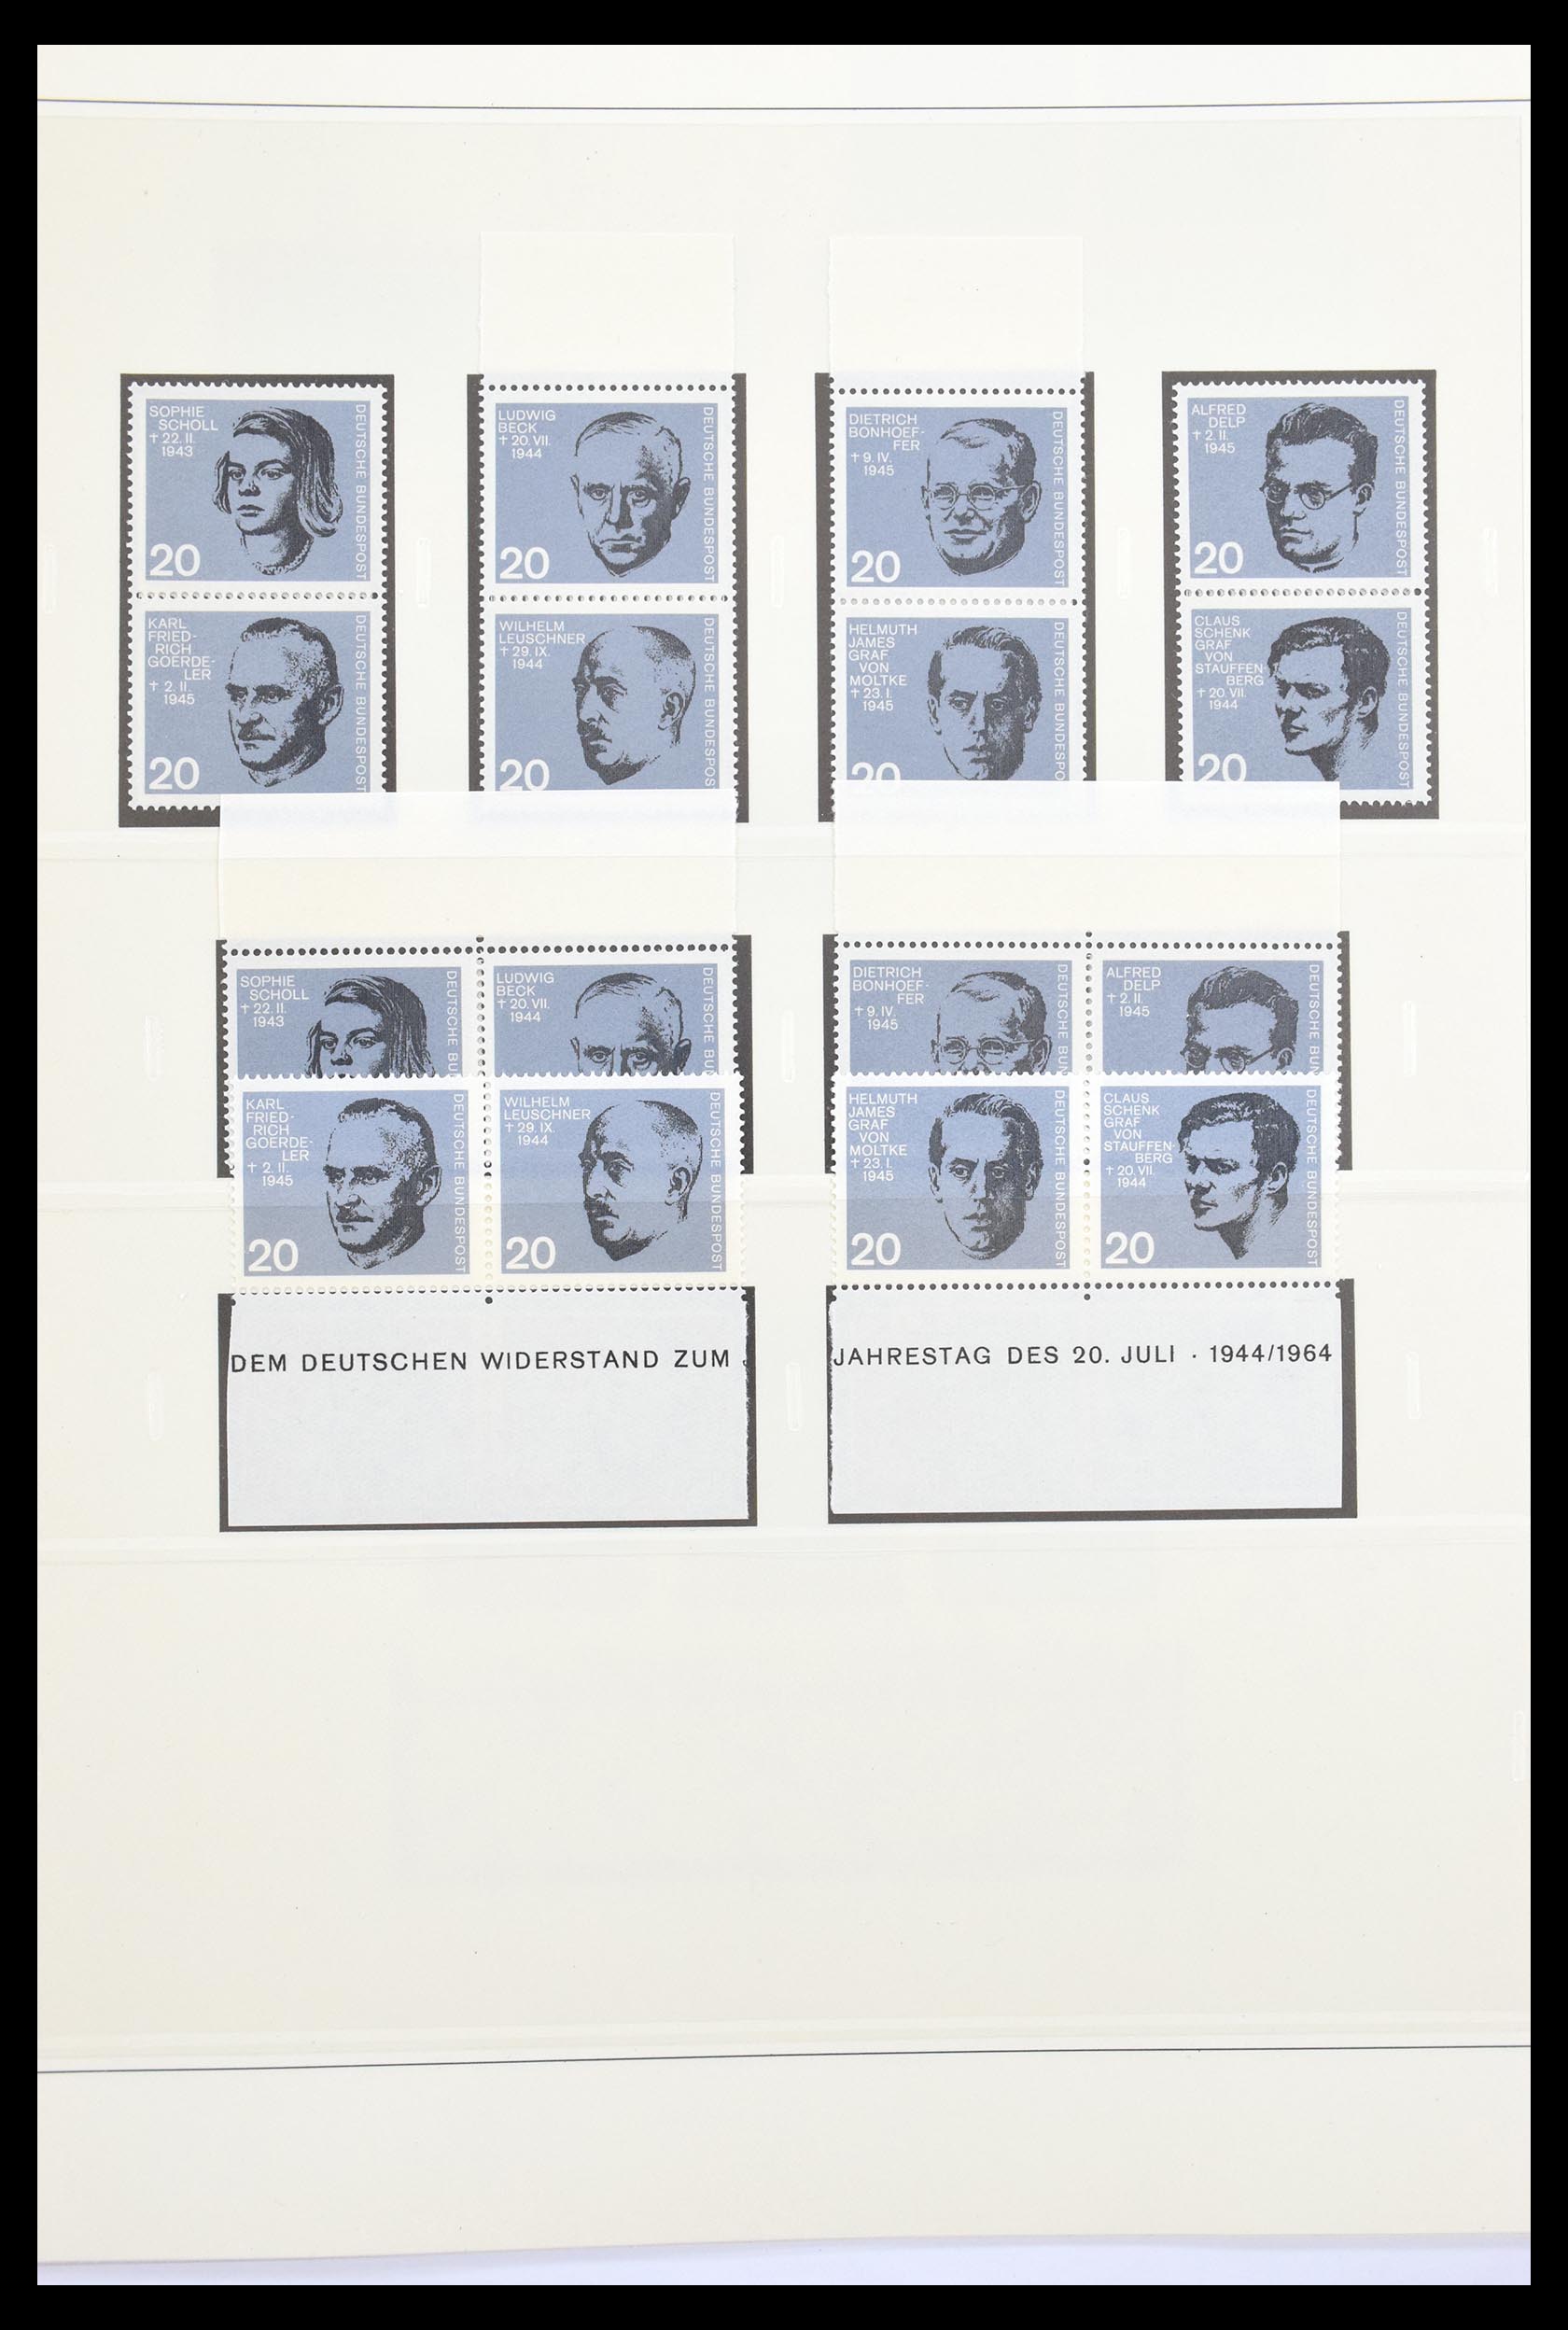 30605 020 - 30605 Bundespost combinations 1951-1974.